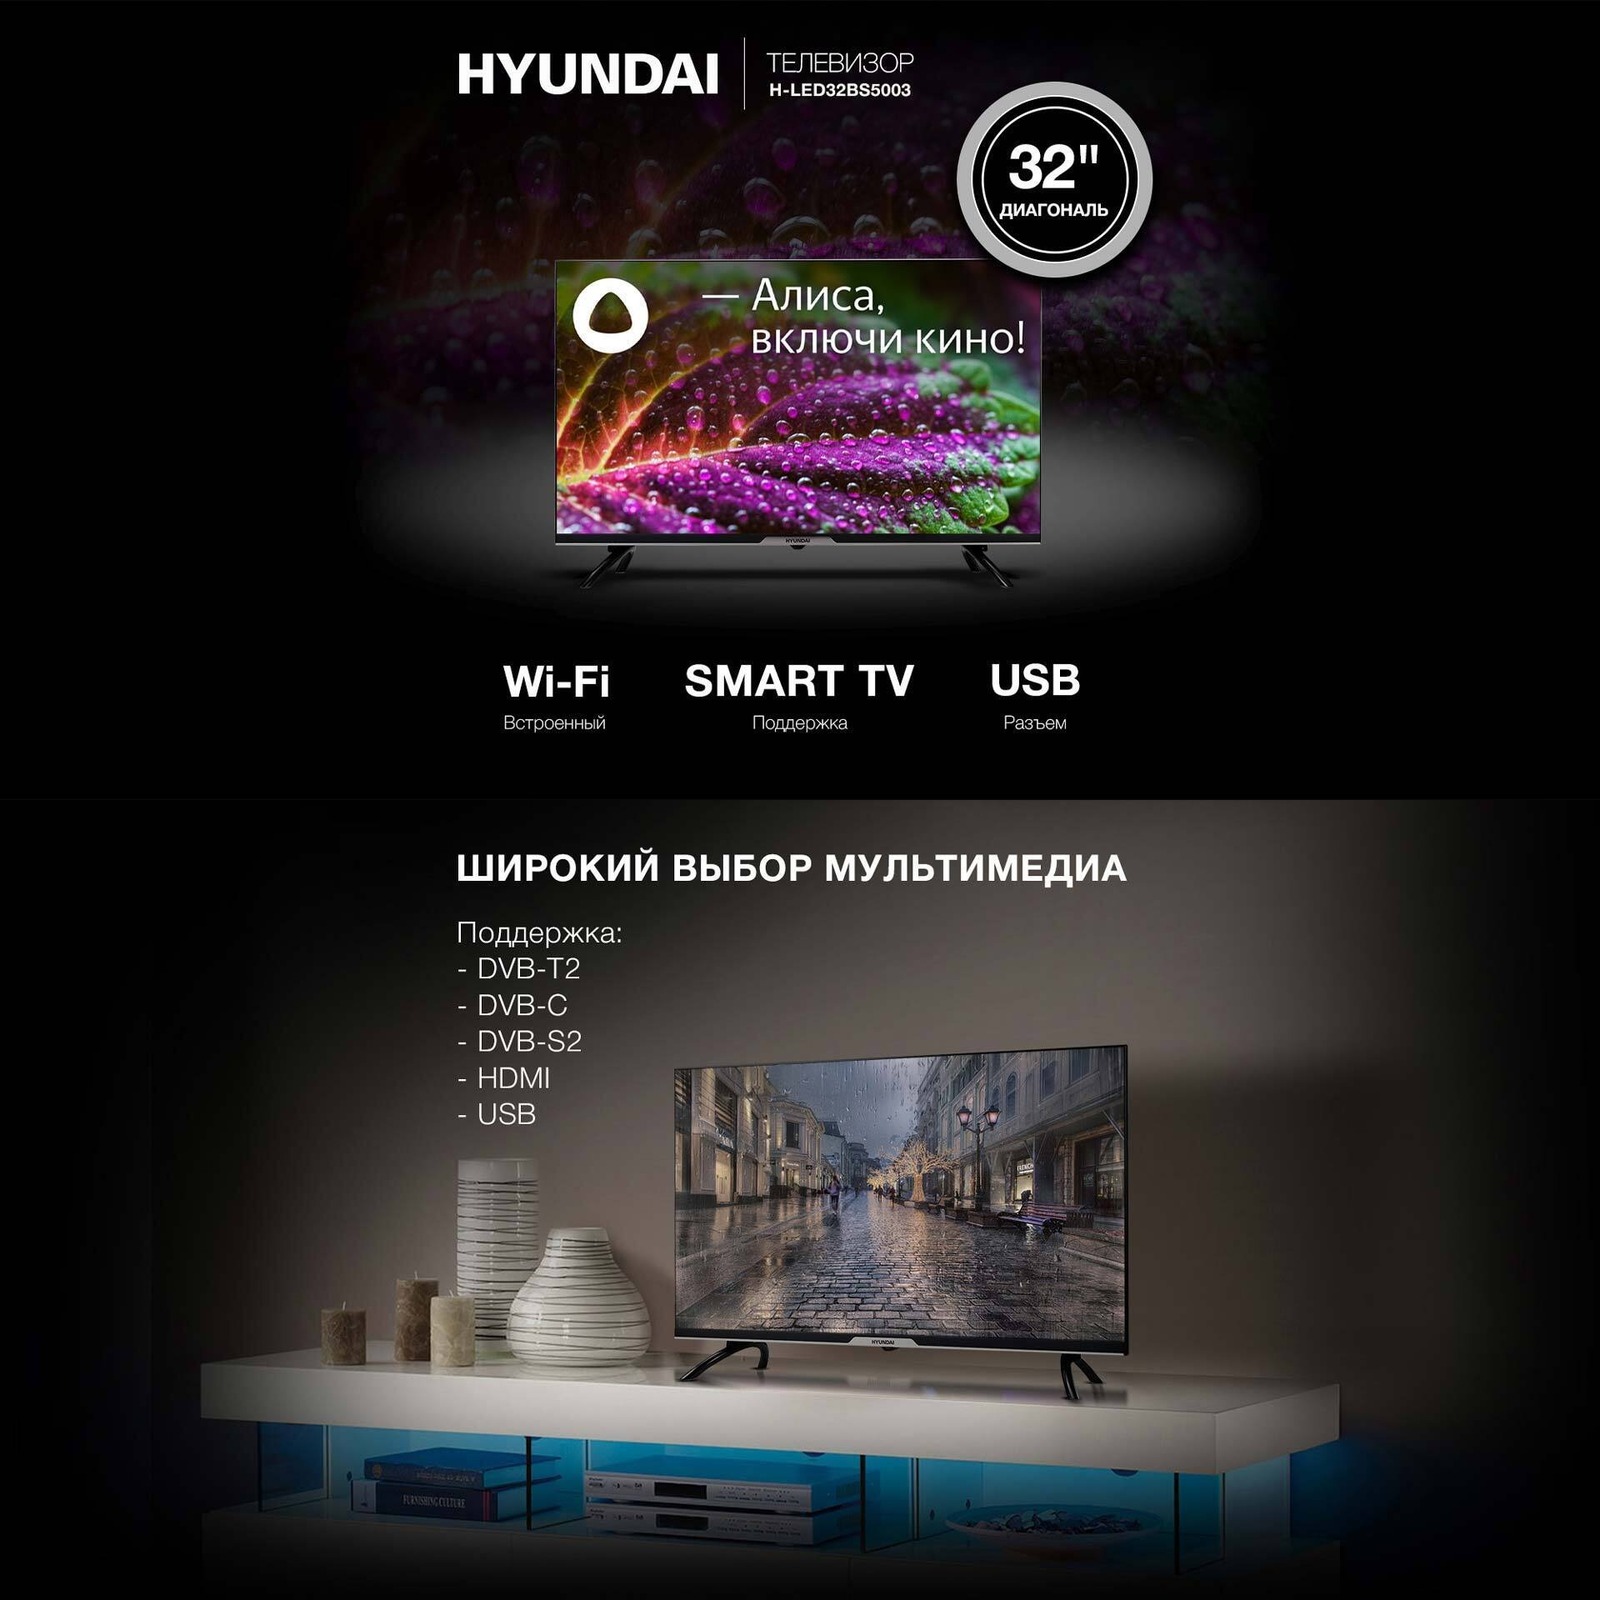 Телевизор Hyundai H-LED32BS5003. Поддержка большого количества цифровых тюнеров.